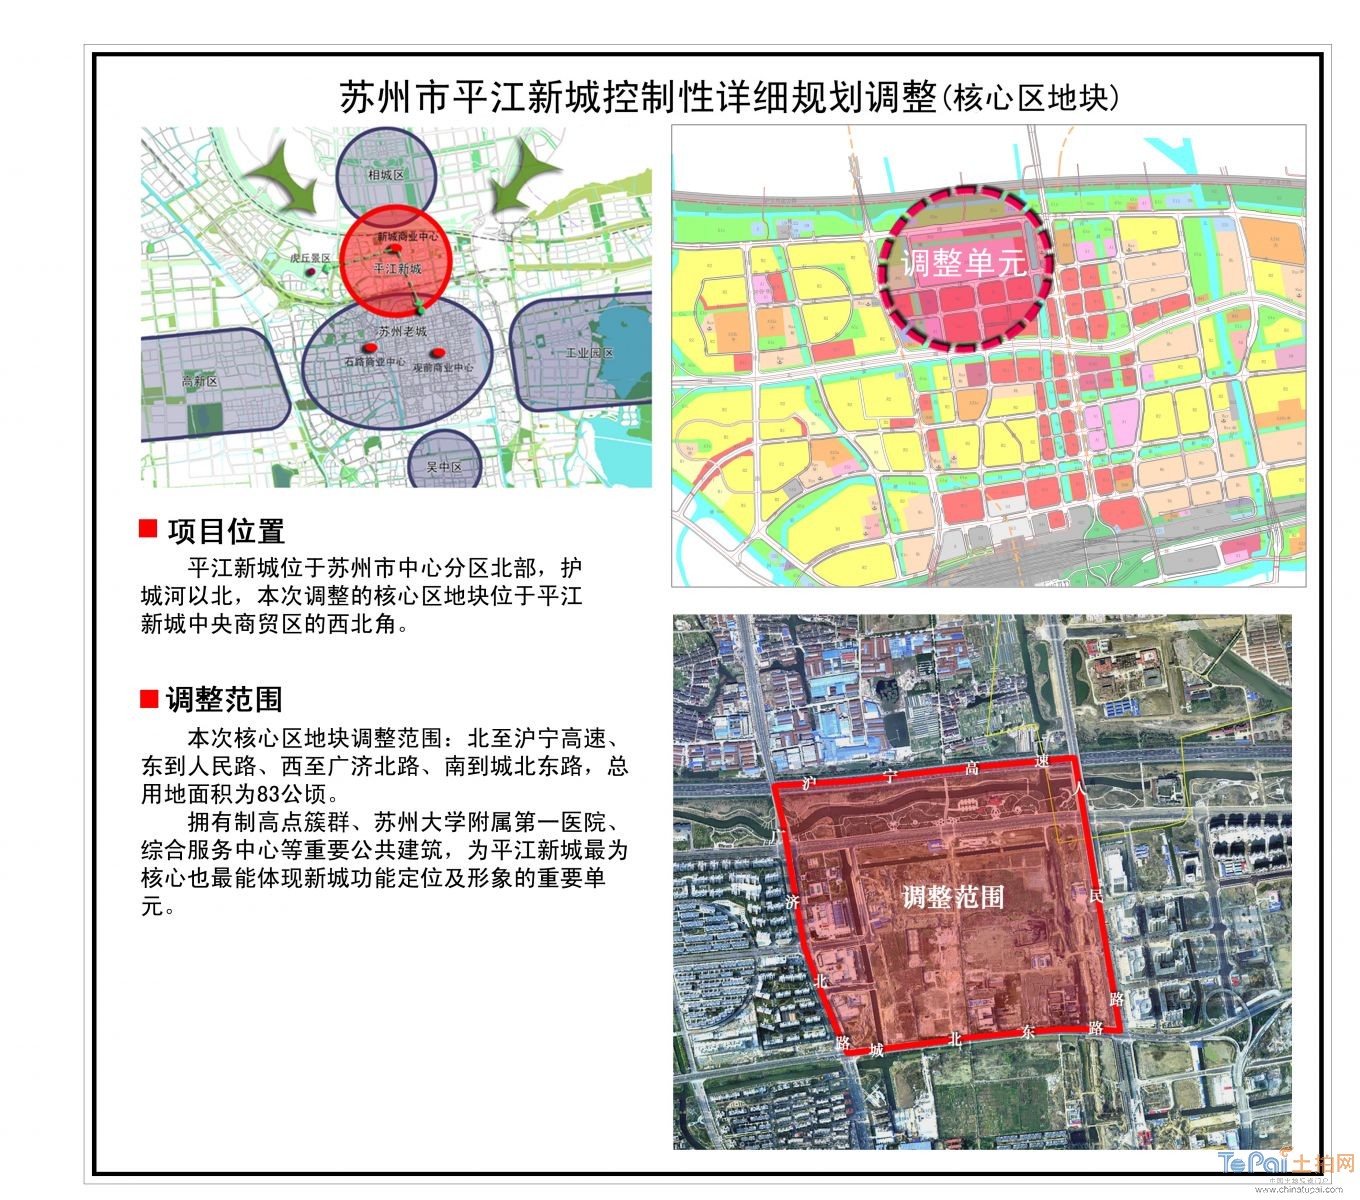 并将发展建设成为平江新城区,苏州市副中心